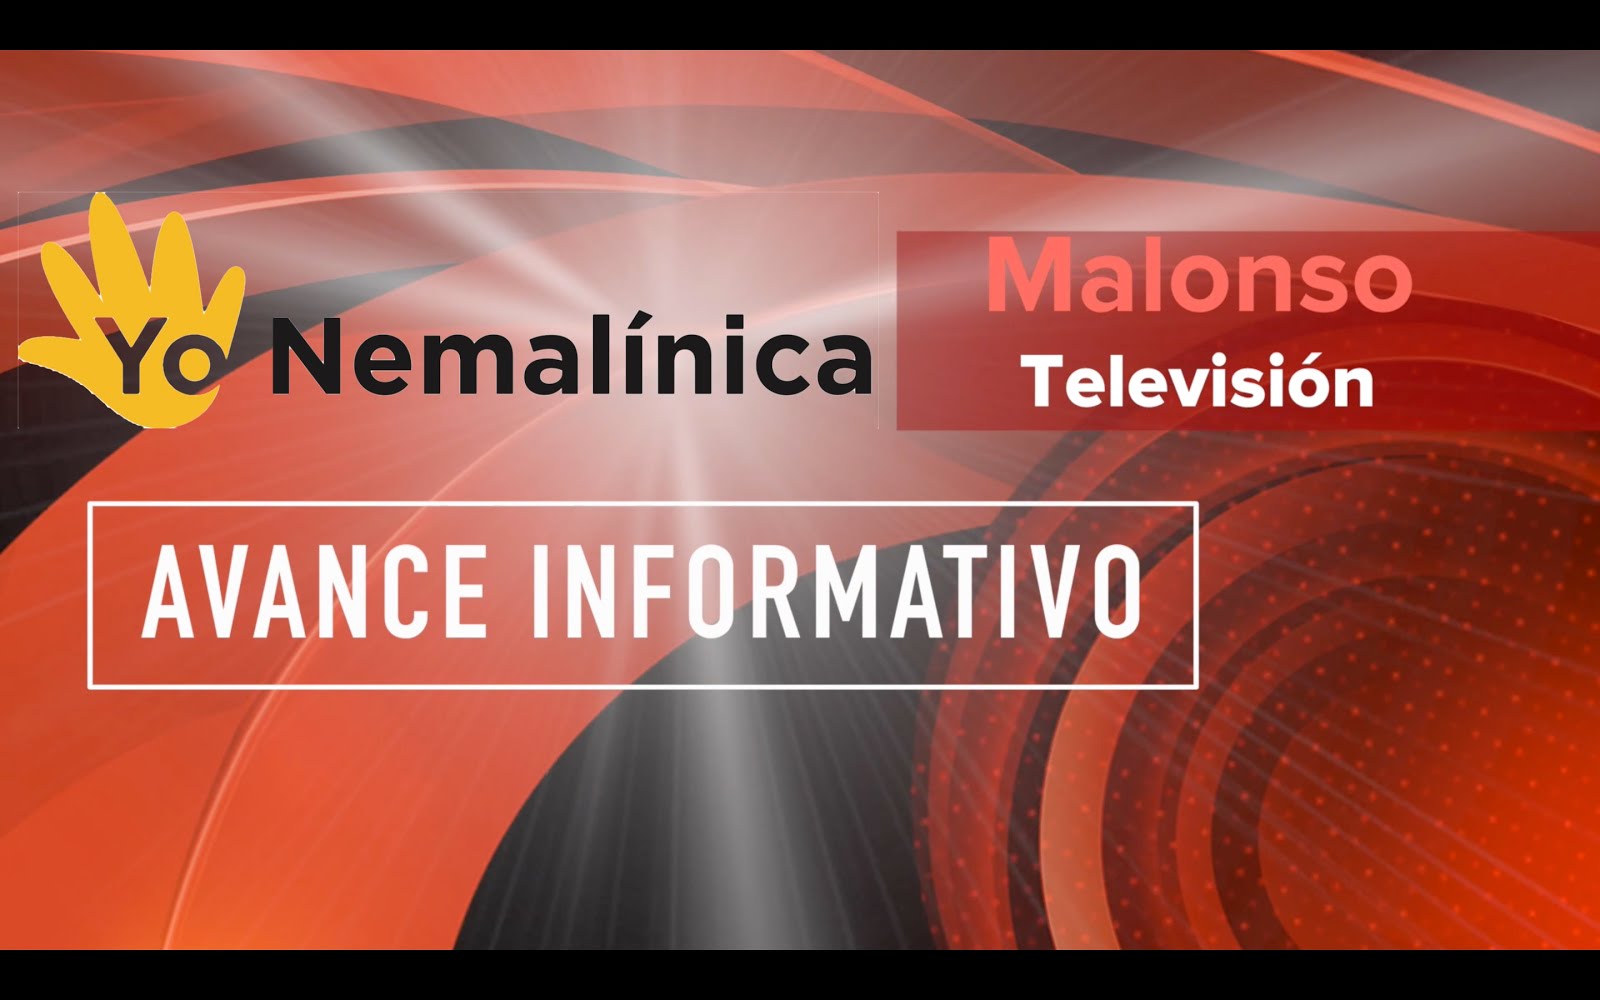 Malonso Tv: Miopatía nemalínica.